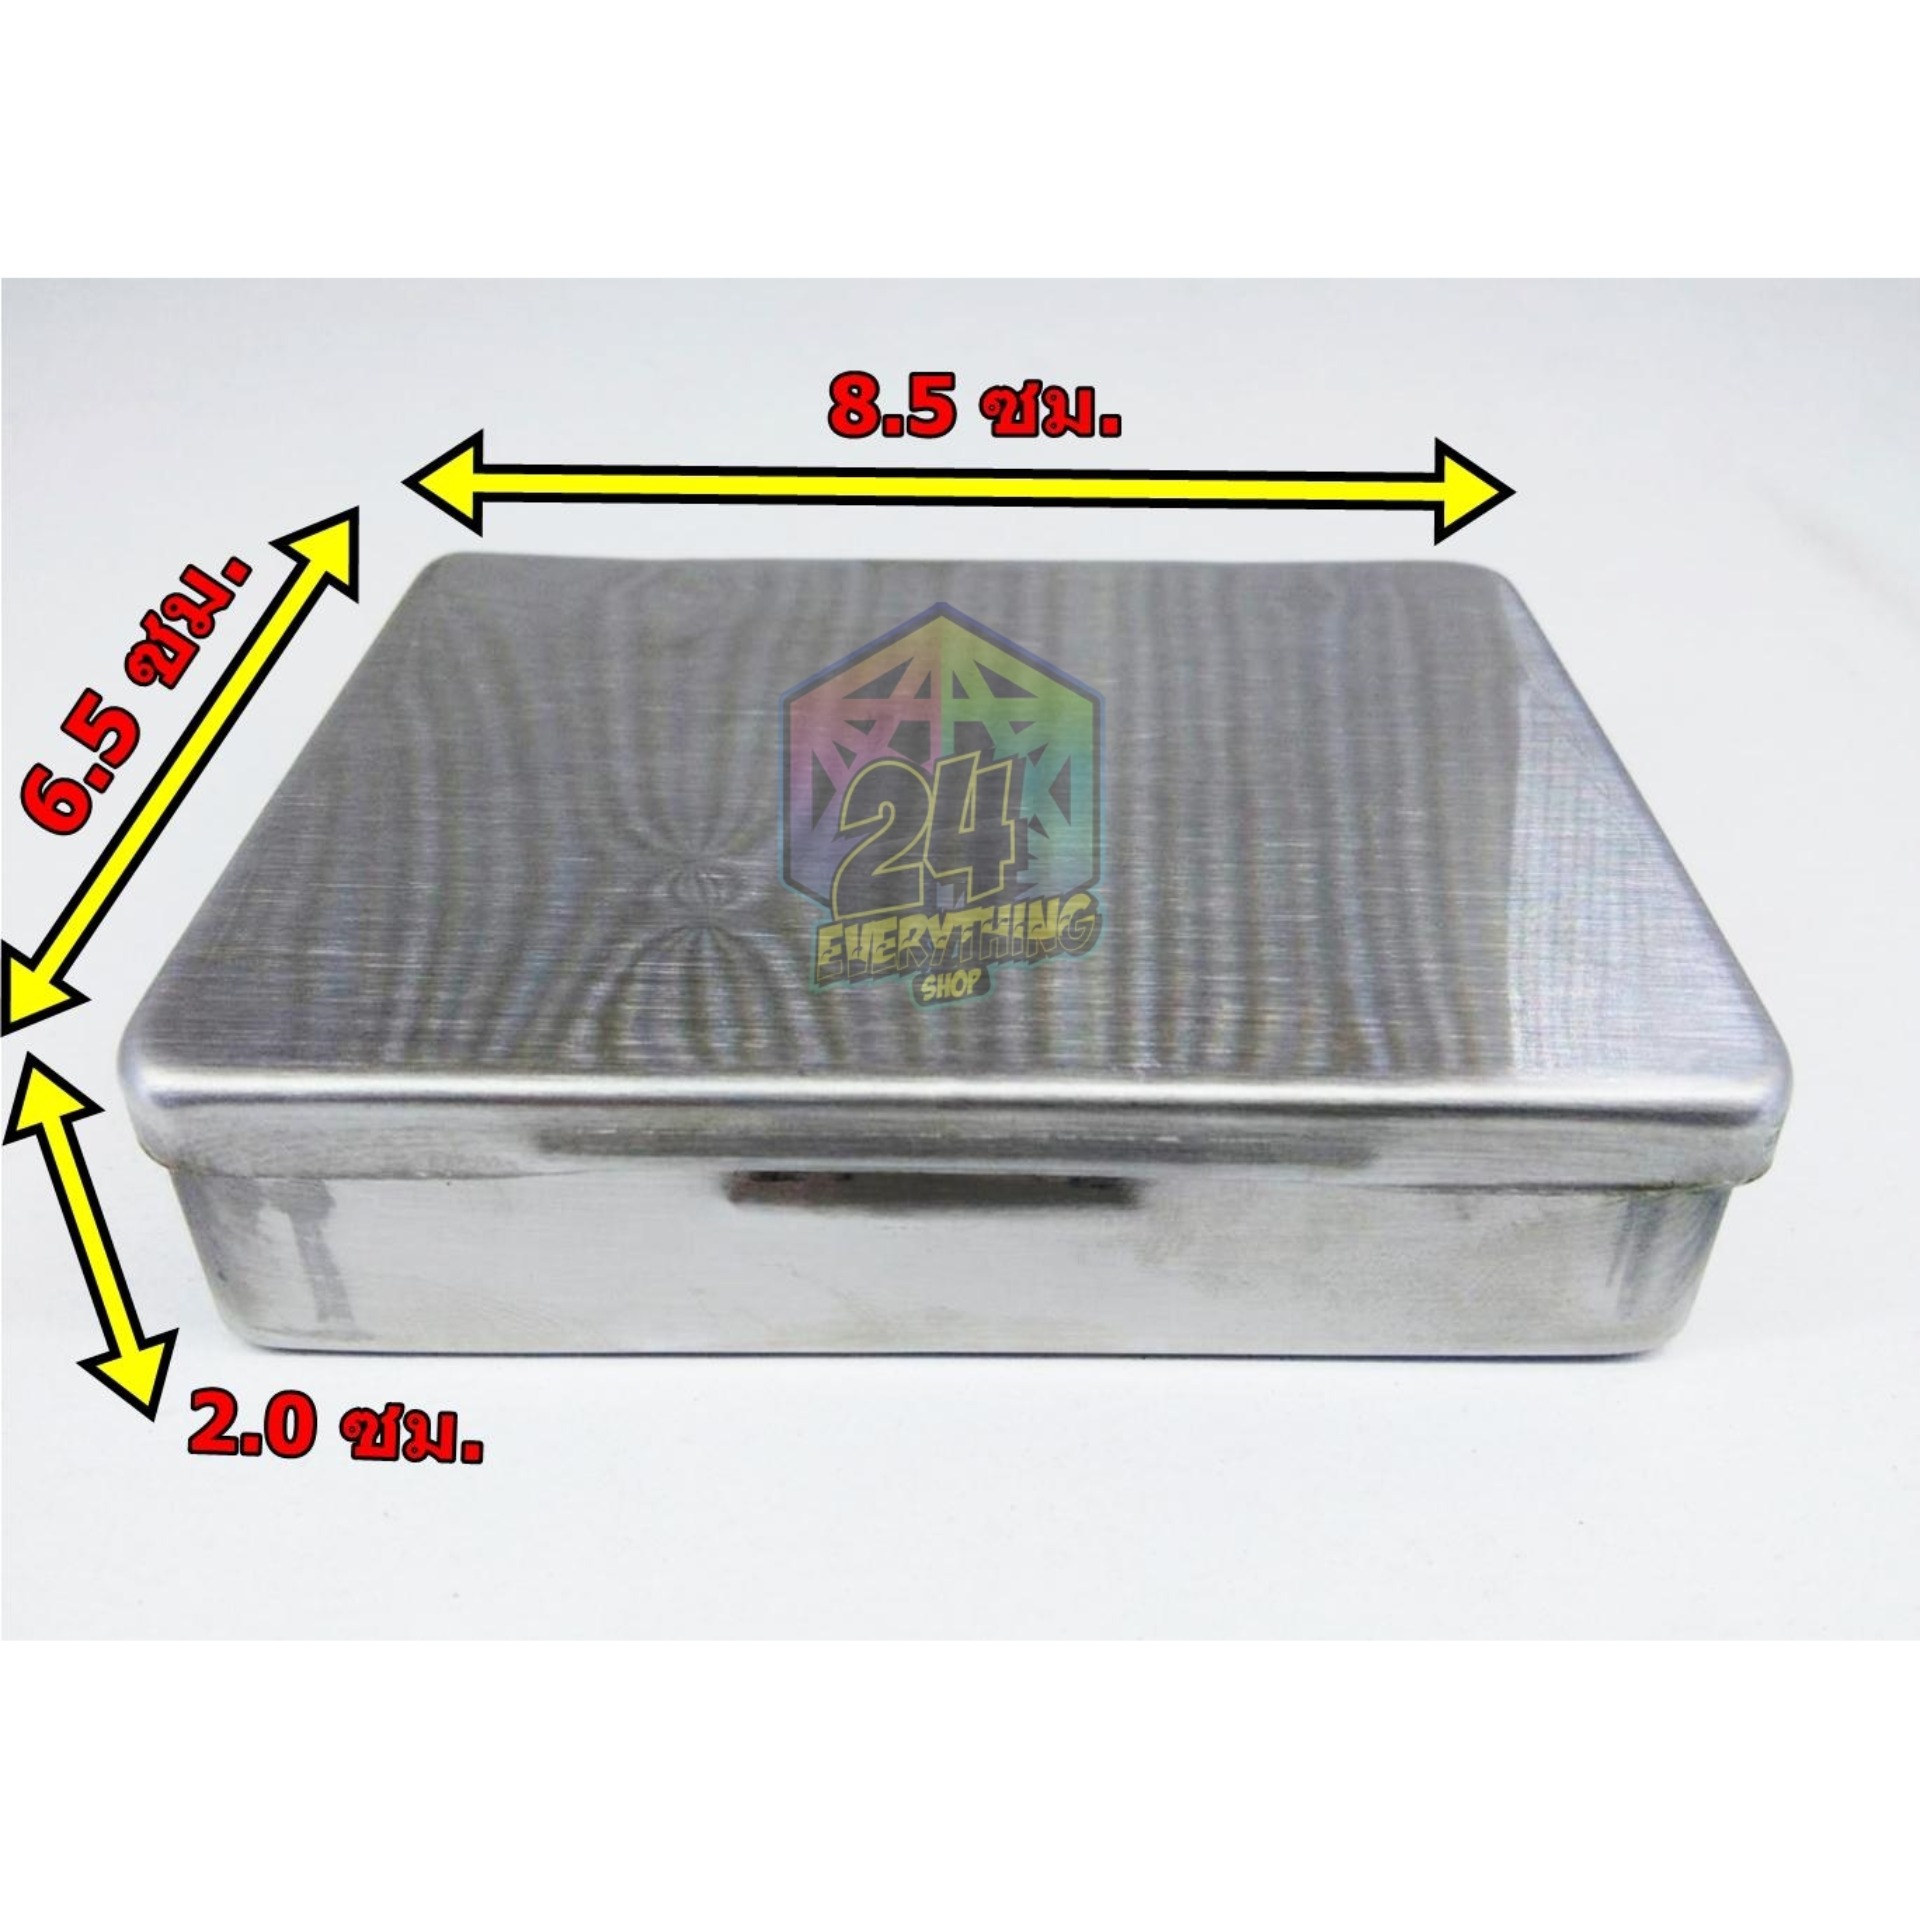 กล่องสแตนเลส โมเดล 9 แบบหนา /กล่องใส่พระ/กล่องใส่เหรียญ/กล่องใส่ดินสอ ขนาด 6.5 x 8.5 x 2.0 ซม. (สีเงิน)